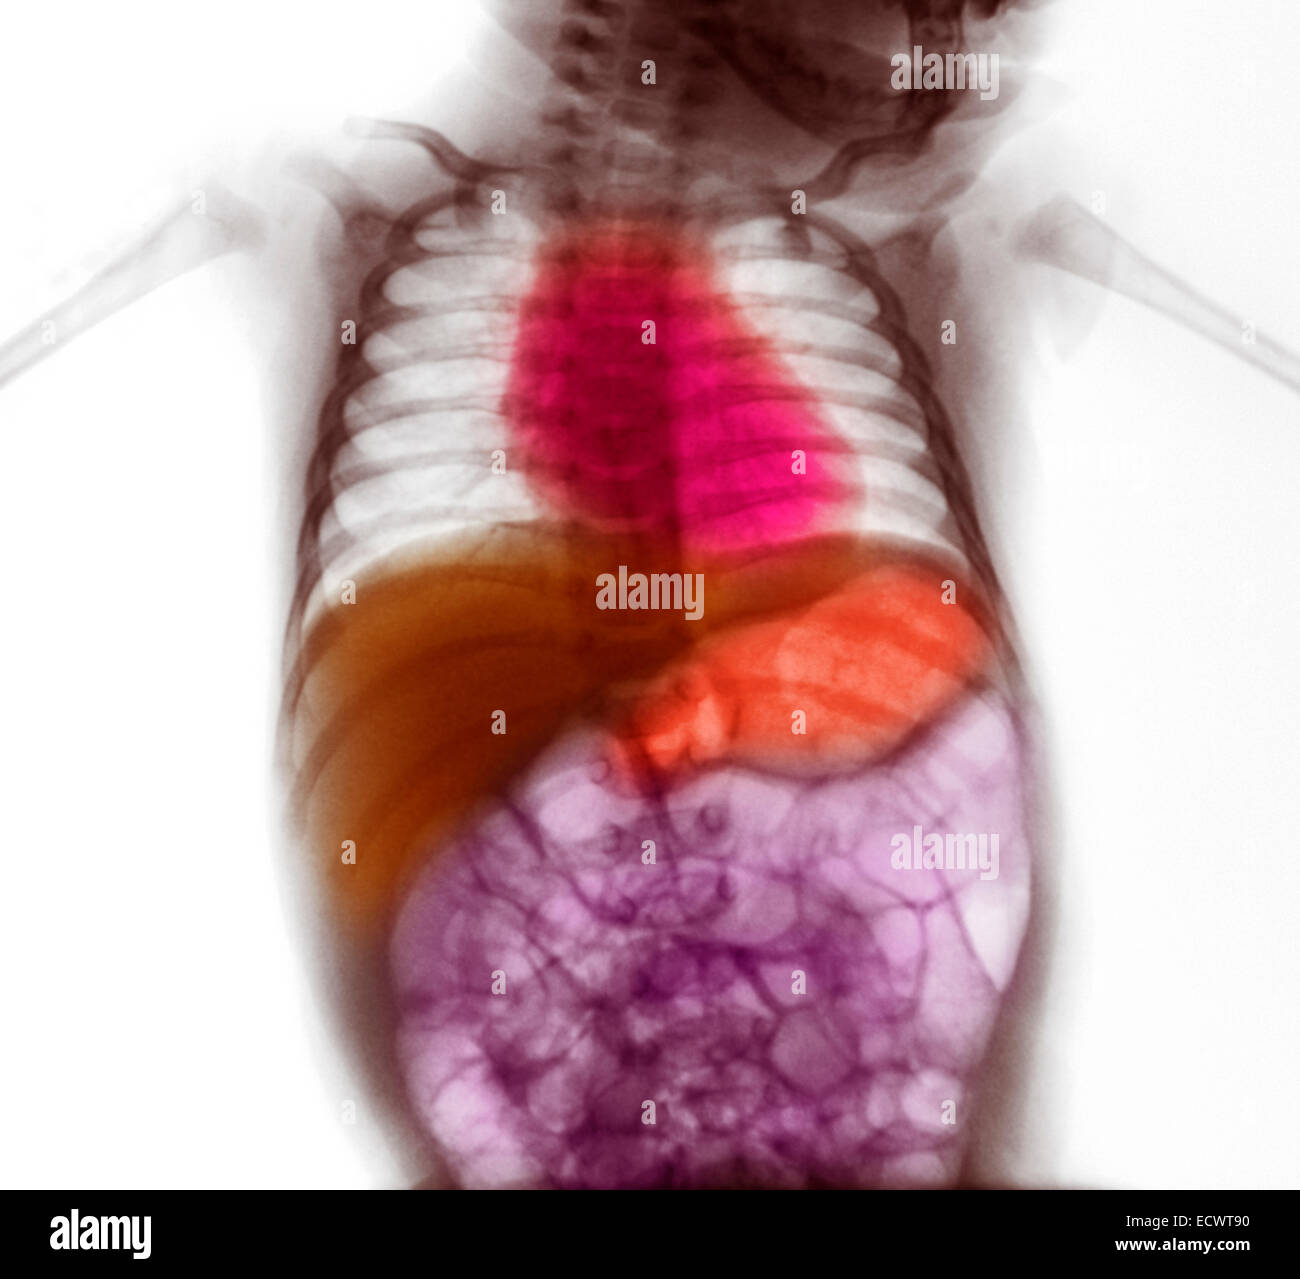 X-ray mostrando distensión gaseoso de los intestinos. Foto de stock